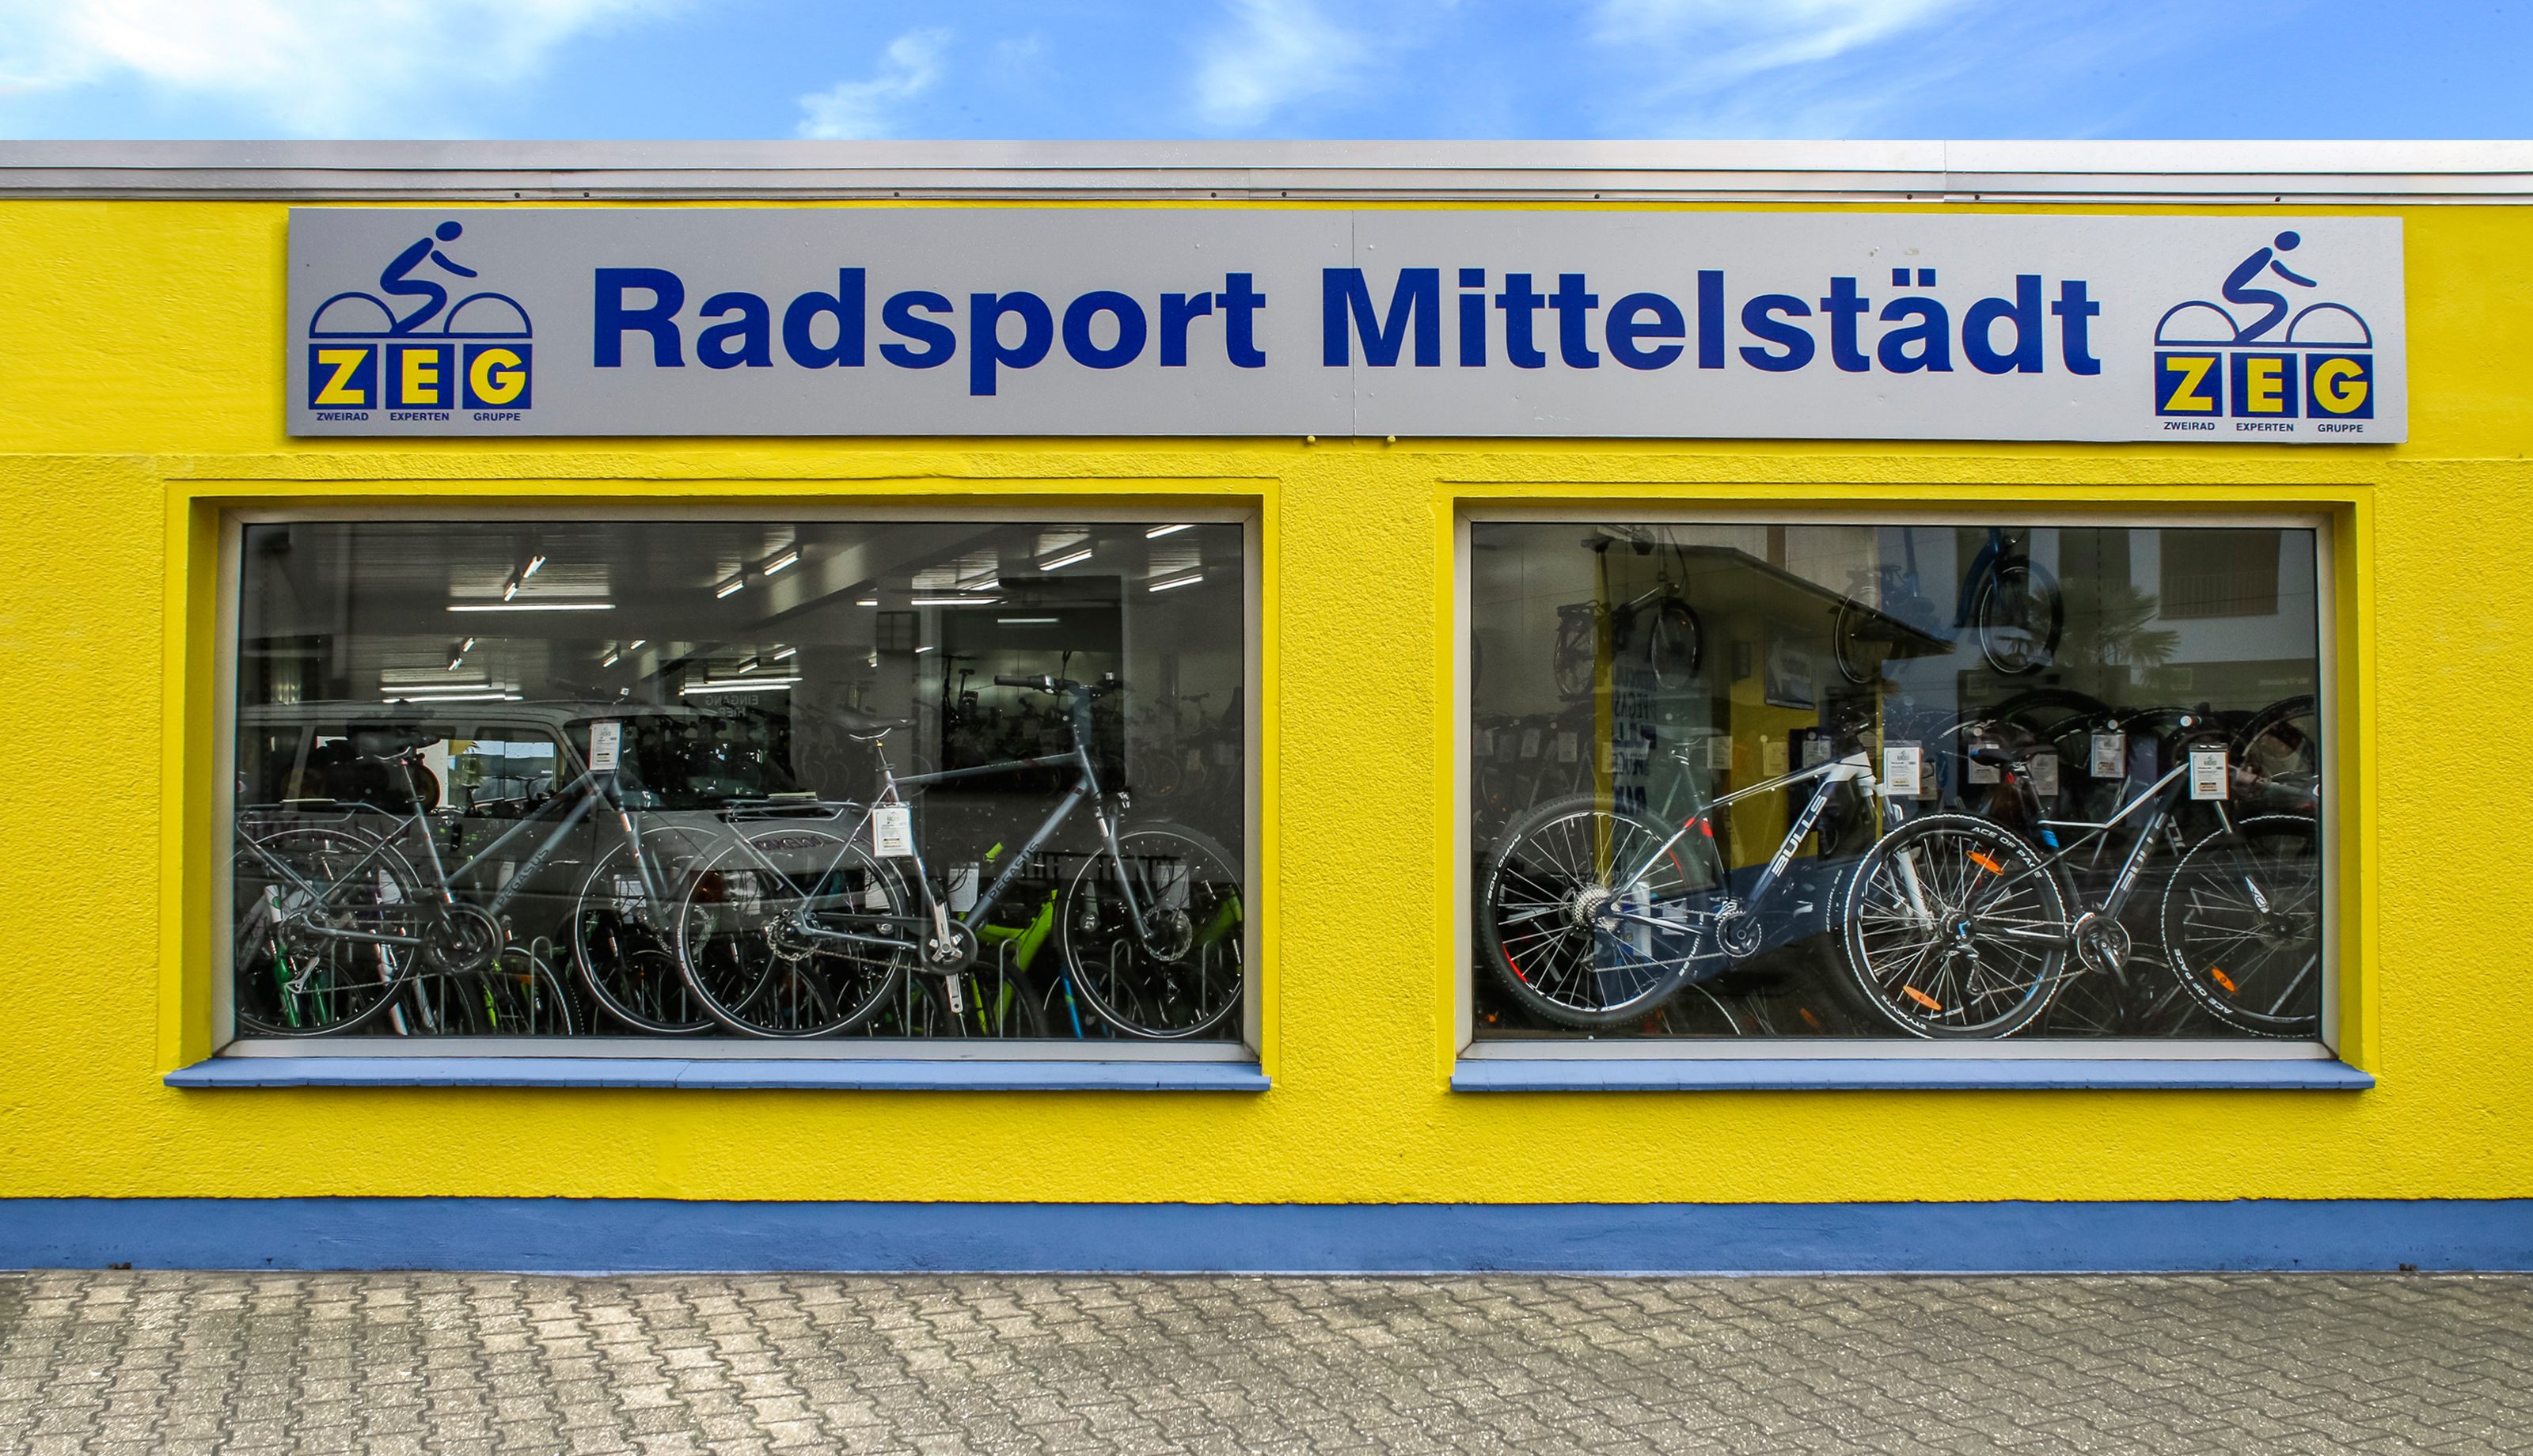 Radsport Mittelstädt in 51371 Leverkusen